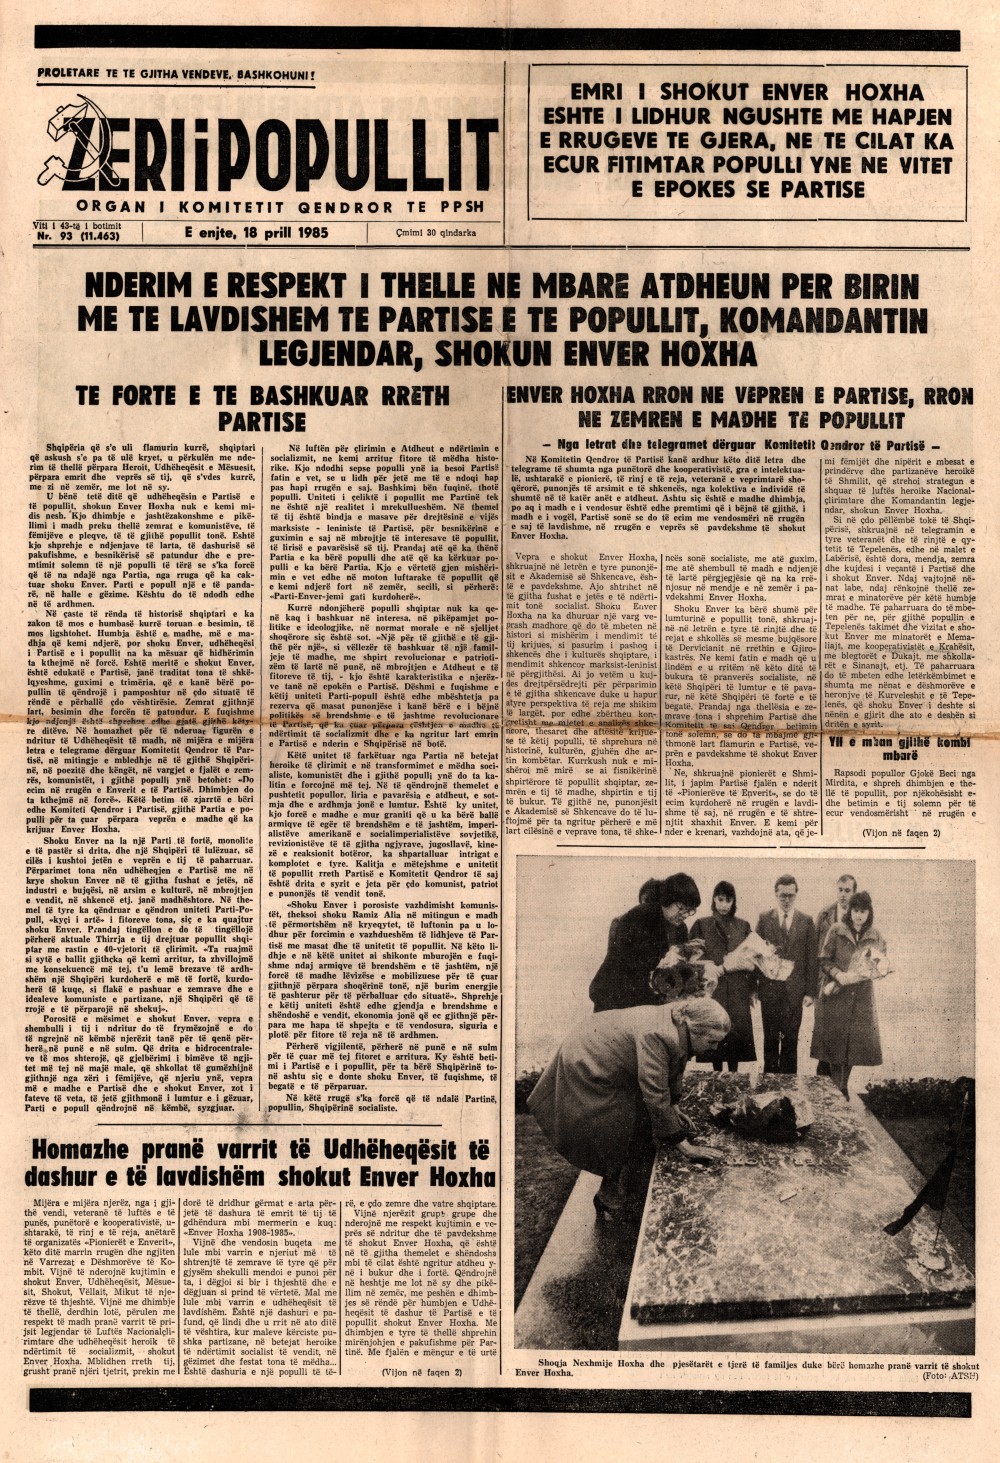 Газета "Зери и популлит" от 18 апреля 1985 года (первая полоса)